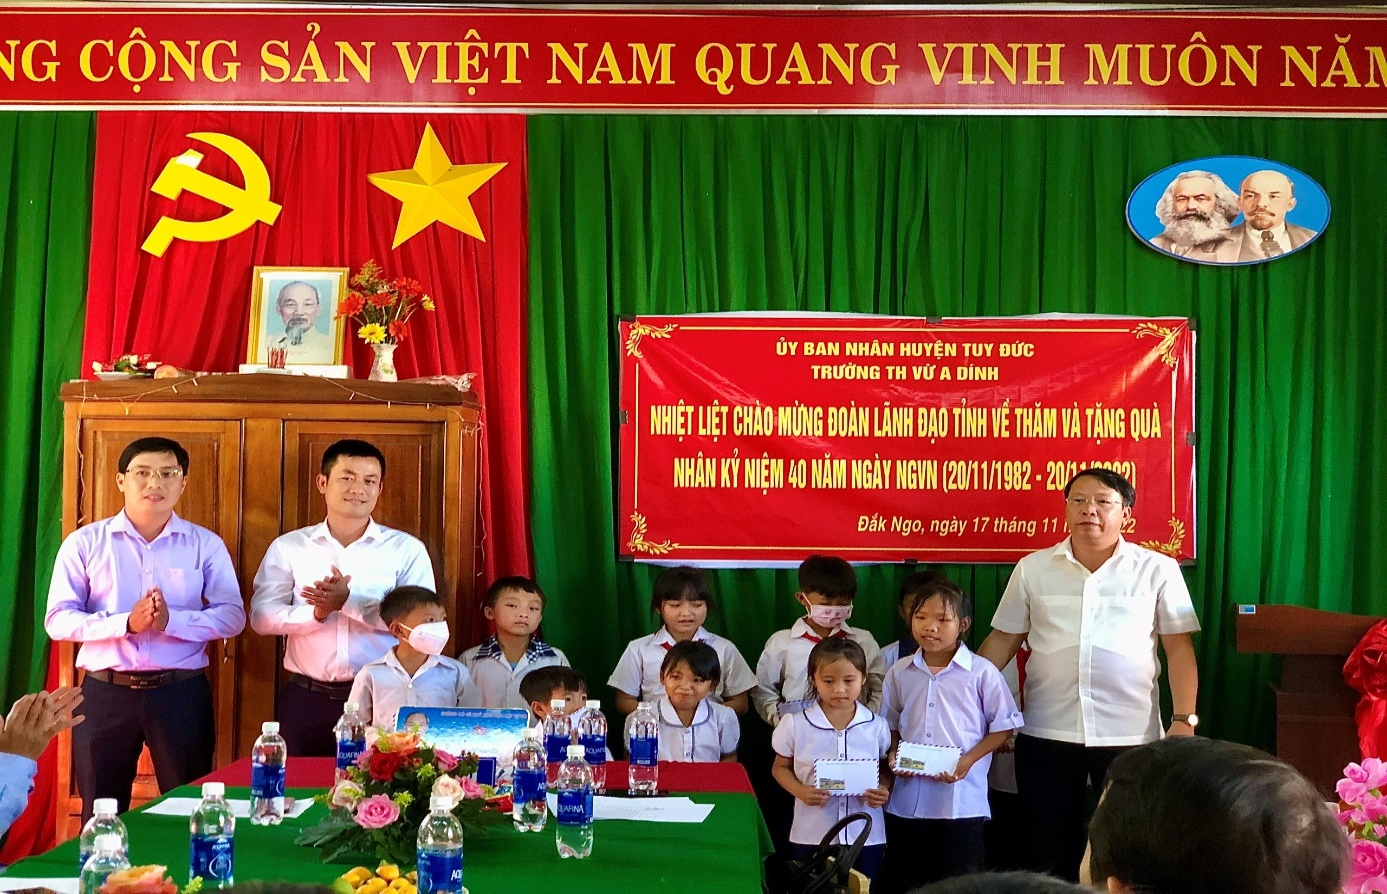 Sở Tư pháp tổ chức thăm, tặng quà tại Trường Tiểu học Vừ A Dính, xã Đắk Ngo, huyện Tuy Đức nhân kỷ niệm 40 năm ngày Nhà giáo Việt Nam